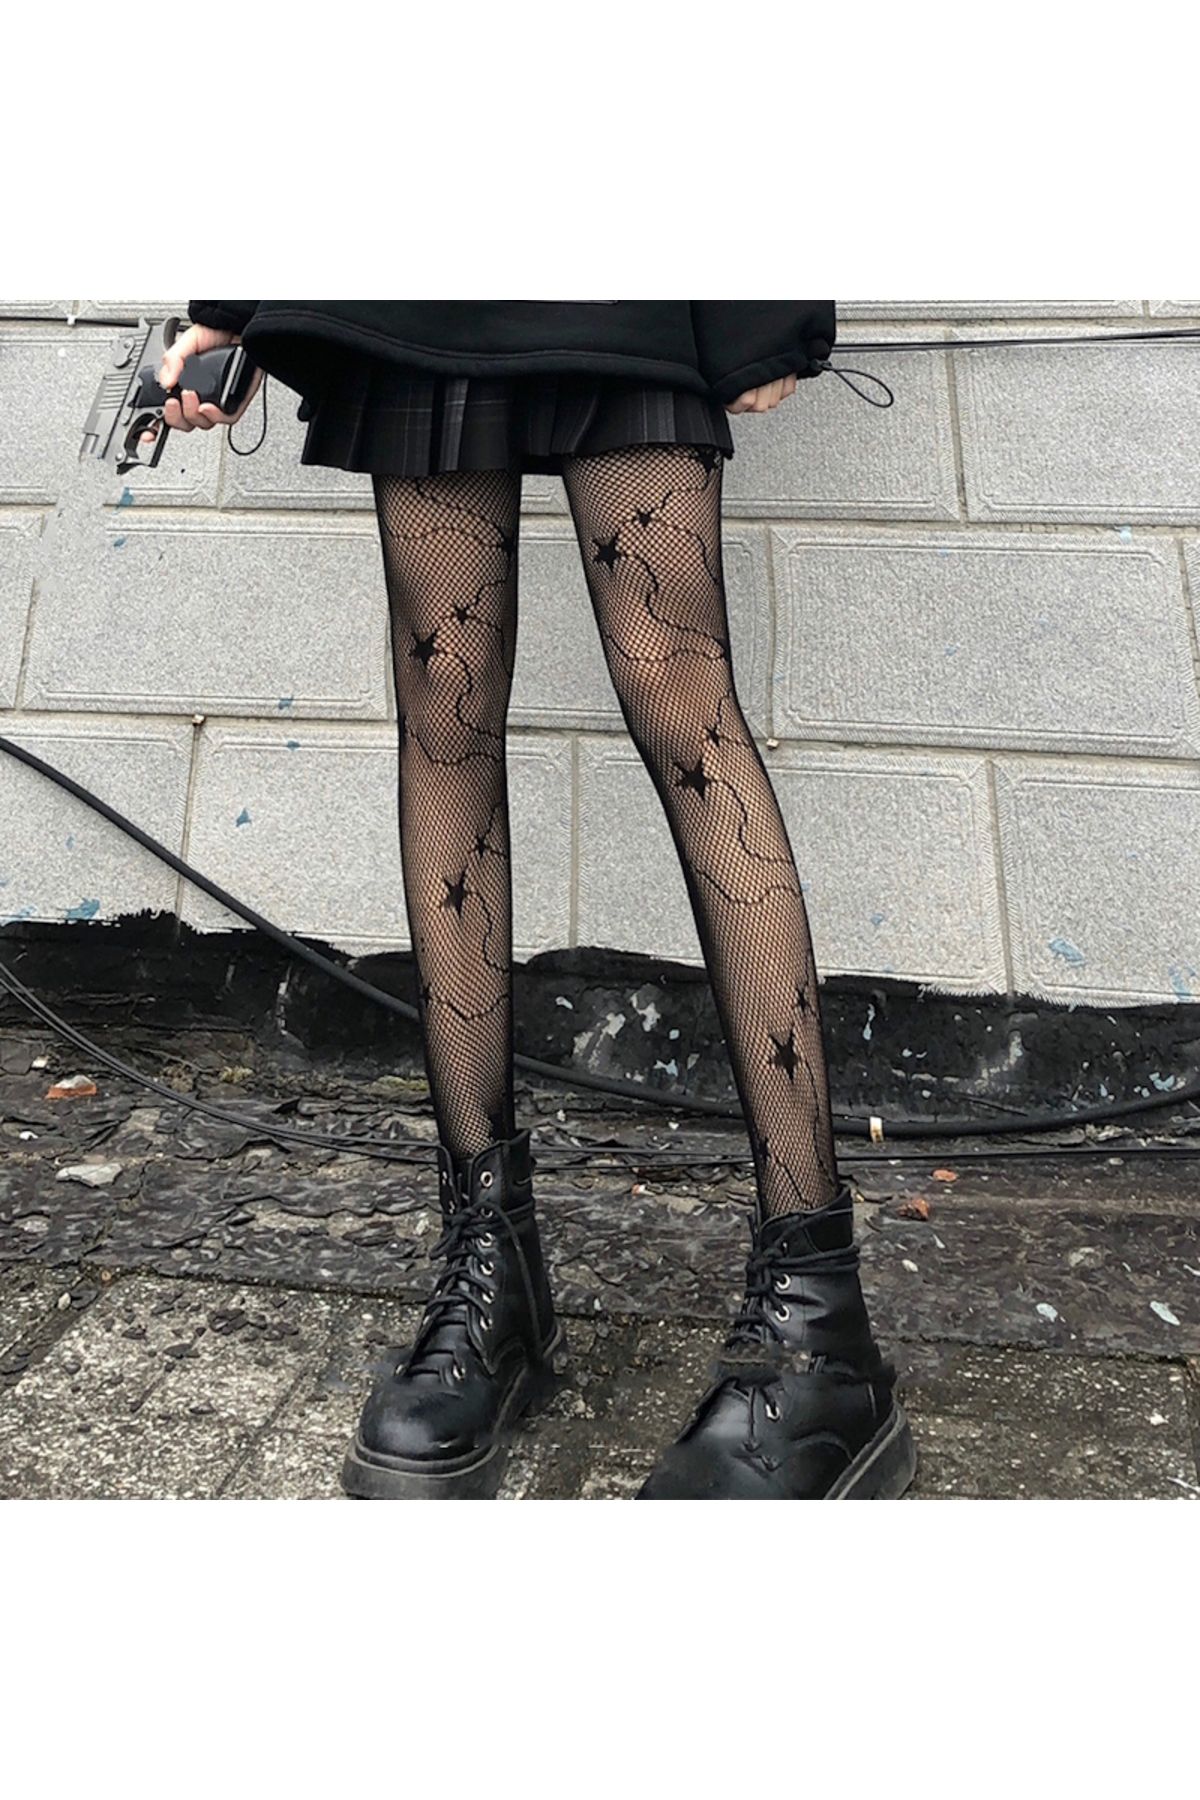 VEGAROKS Lolita Yıldız Desenli Ithal Siyah Külotlu Çorap